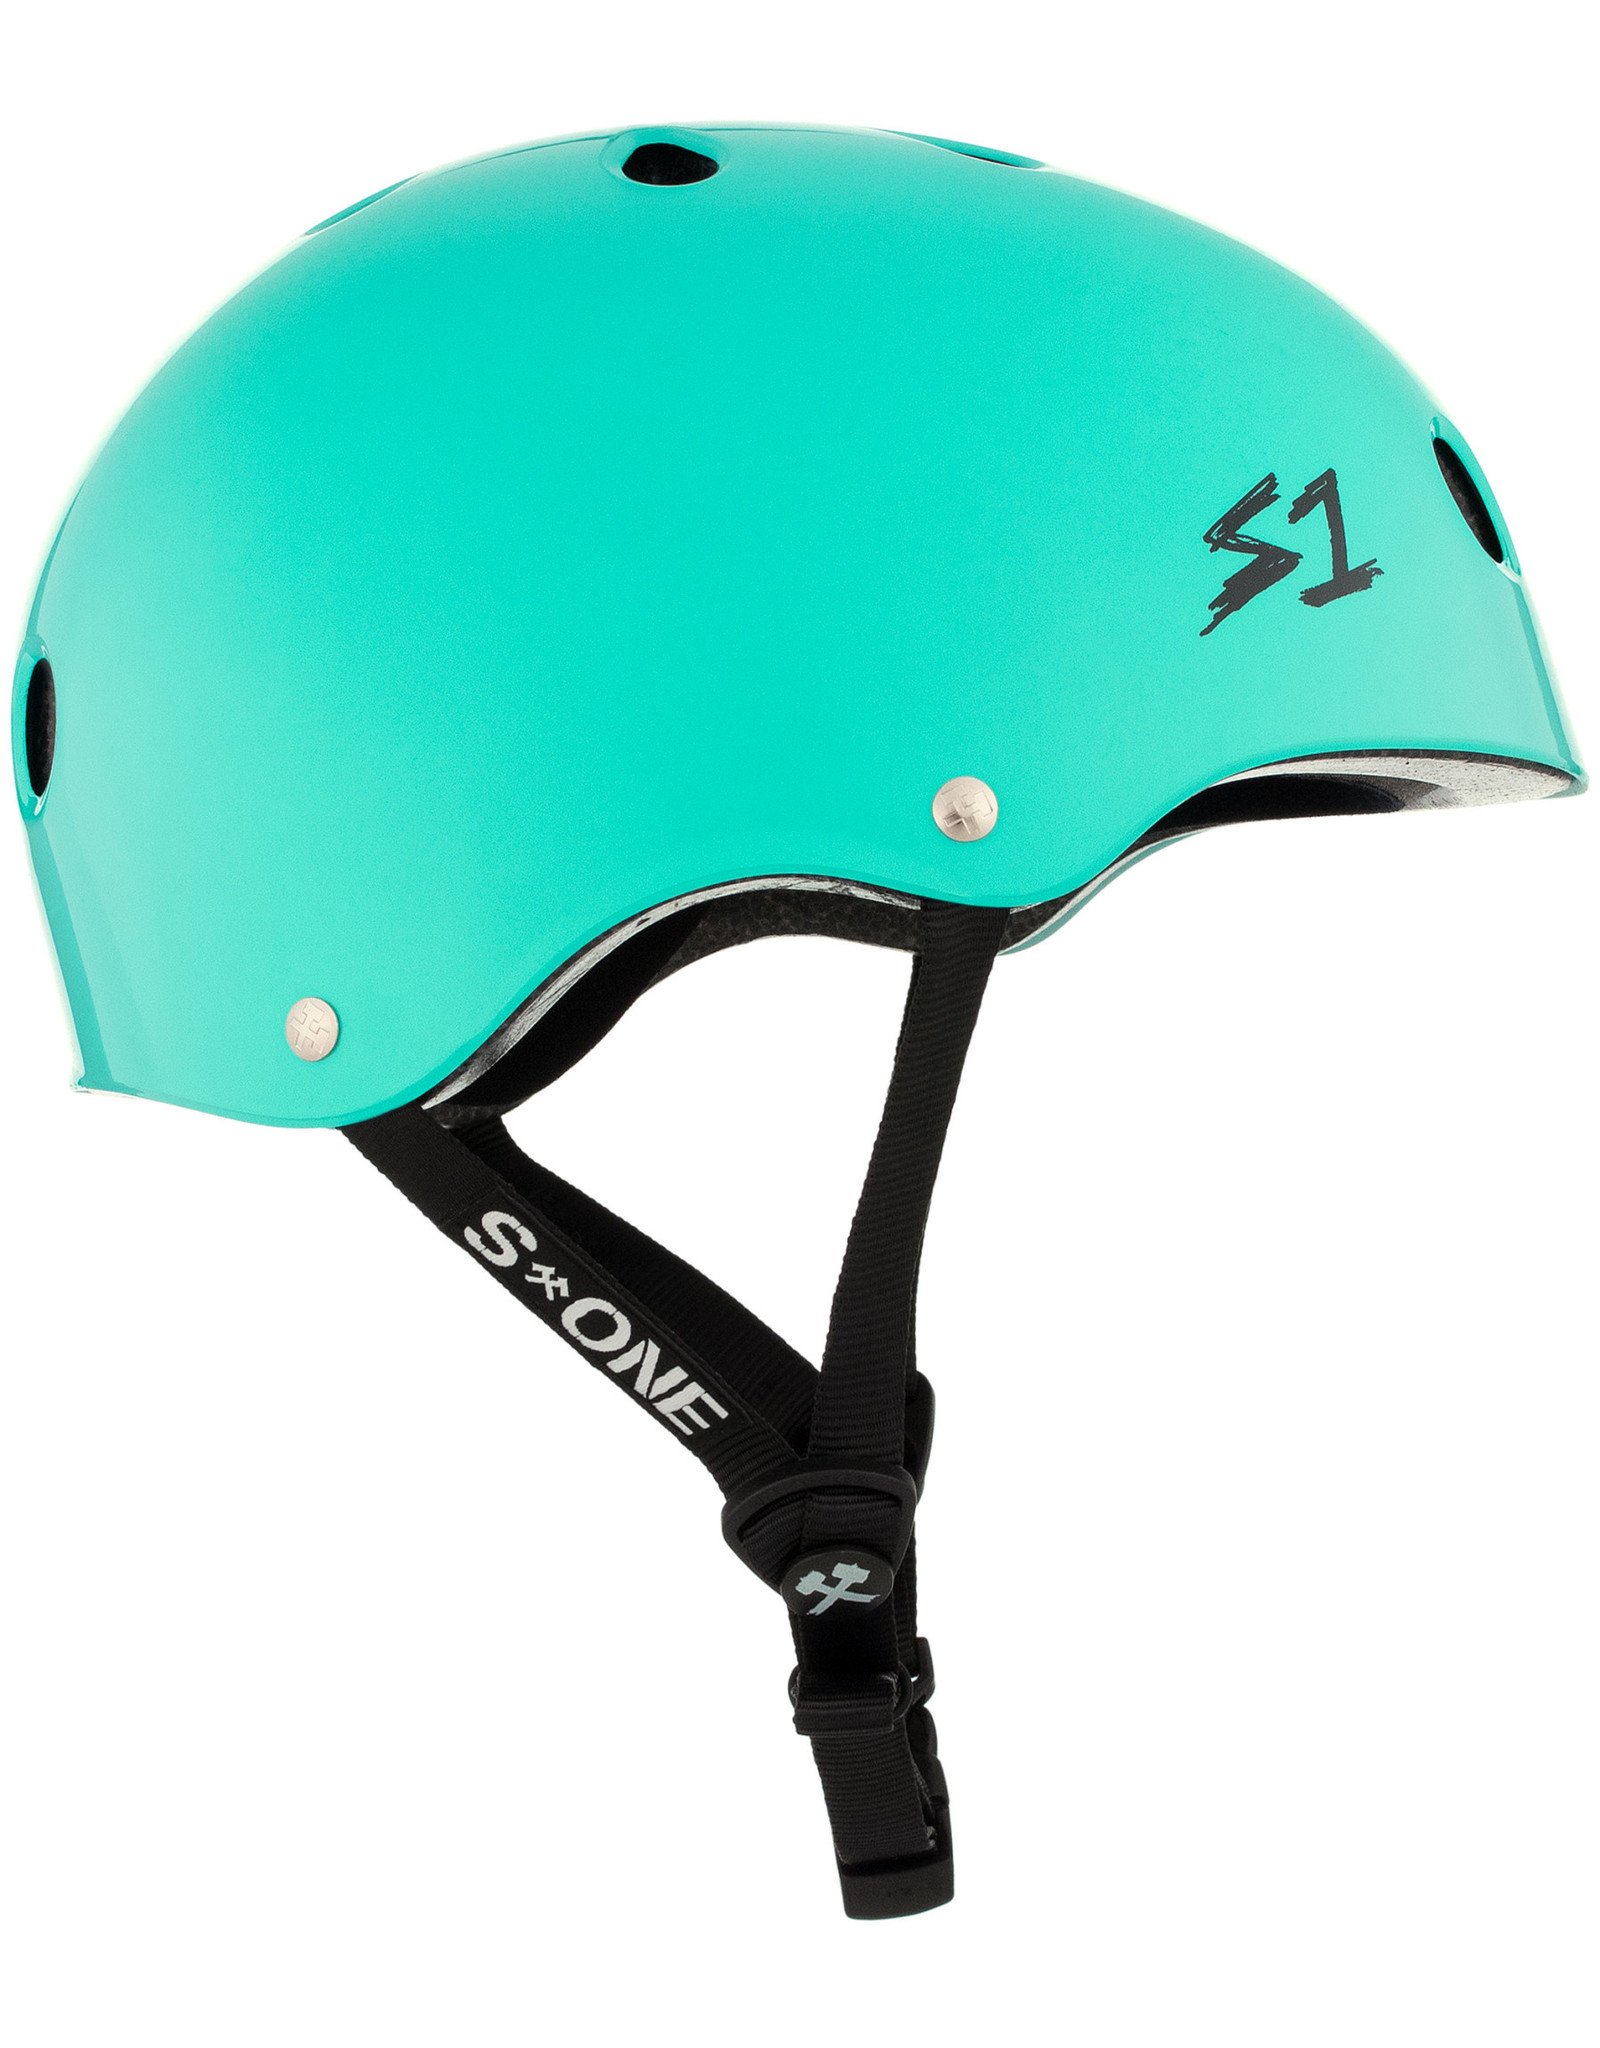 S-One S1 Lifer Helmet - Gloss